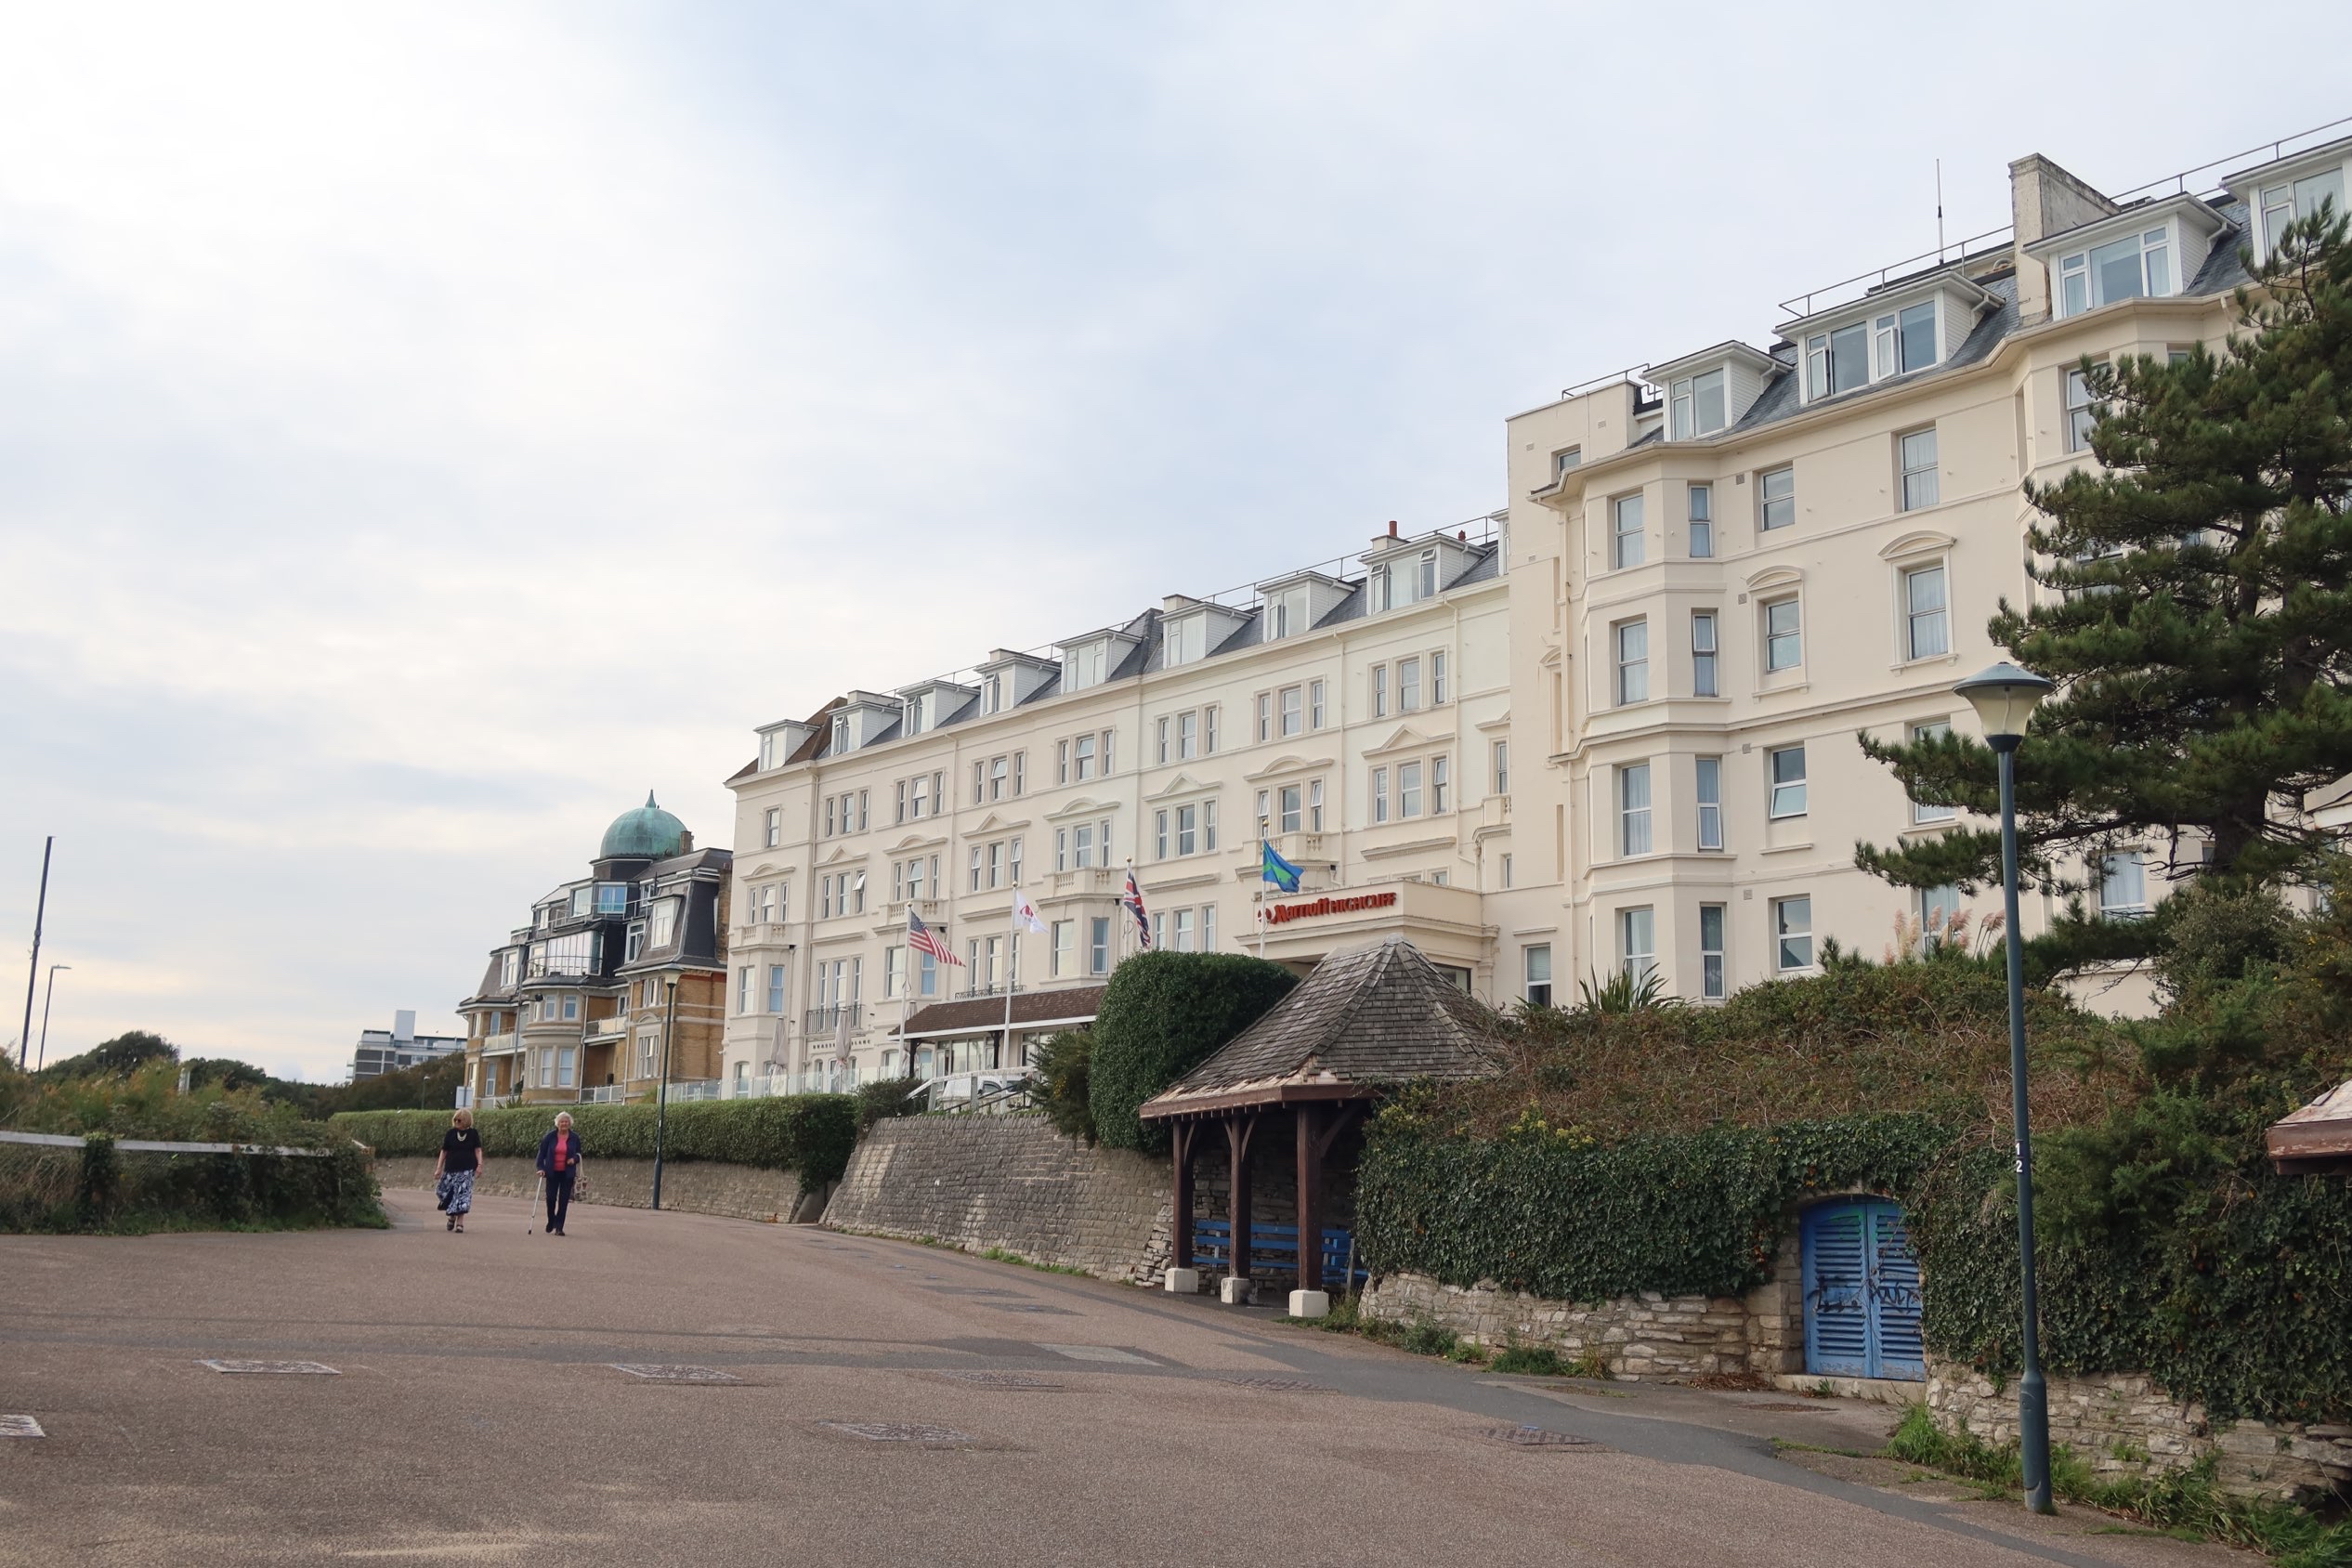 伯恩矛斯海克利夫万豪酒店就坐落在美丽的海滨，还给安排了一个可以看到大海的房间。出门没多远就是中国人开